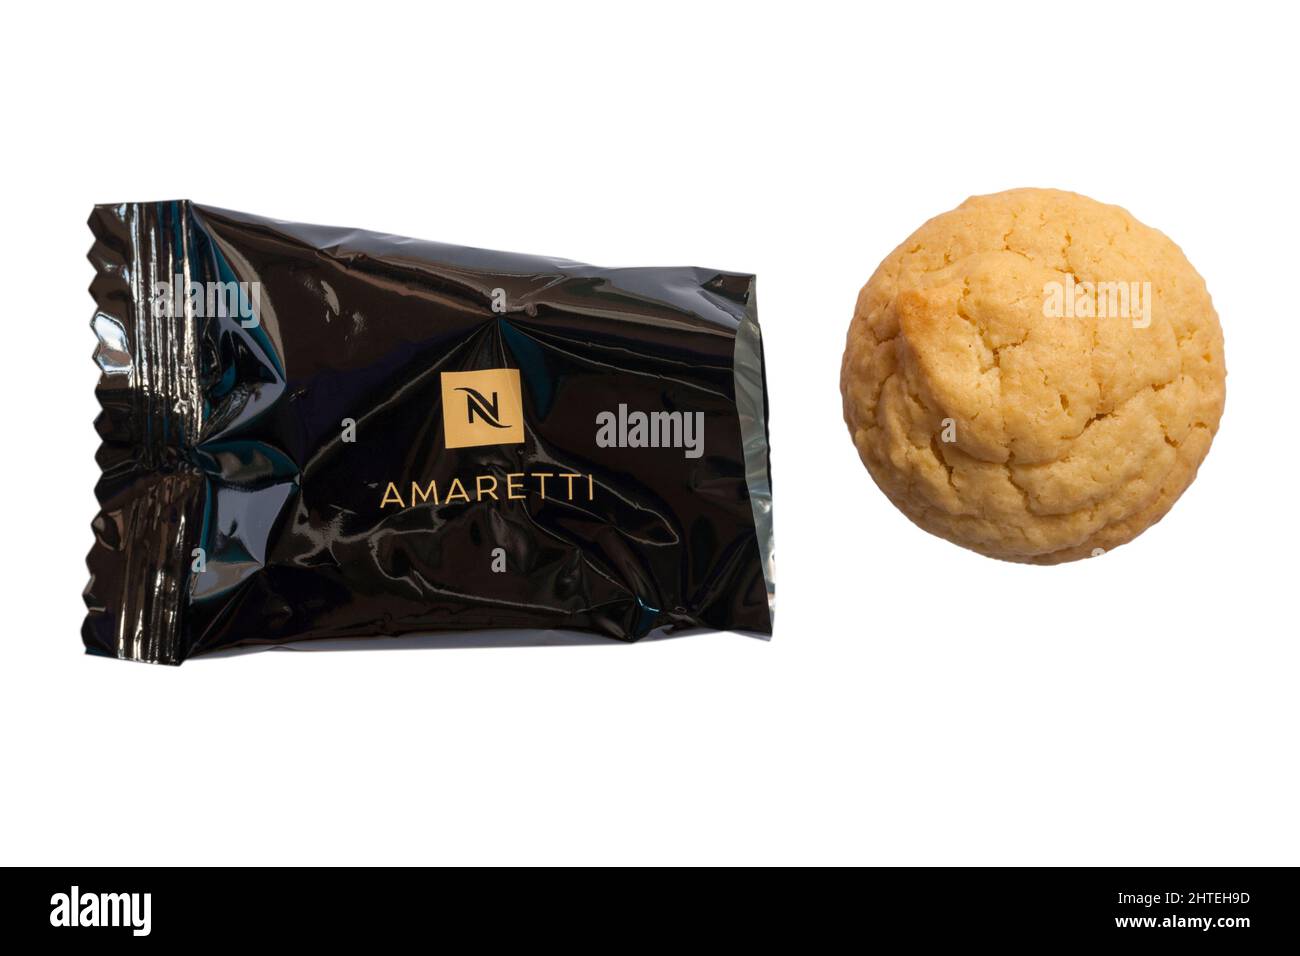 Nespresso amaretti kekse -Fotos und -Bildmaterial in hoher Auflösung – Alamy